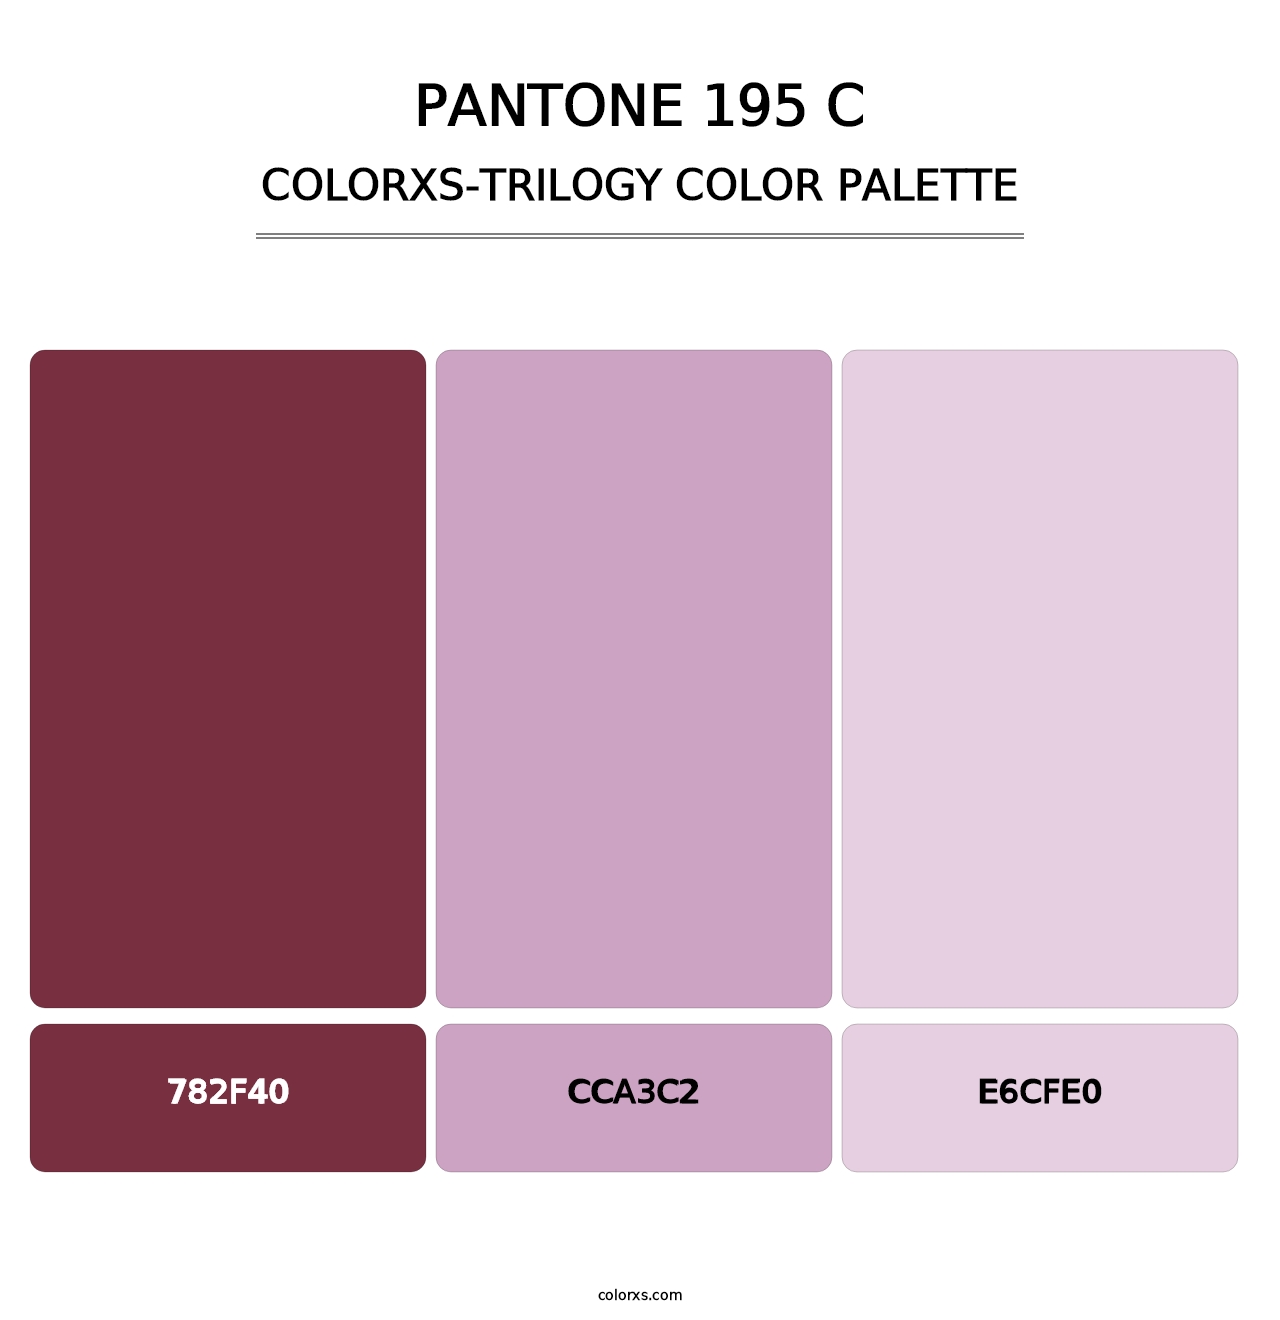 PANTONE 195 C - Colorxs Trilogy Palette